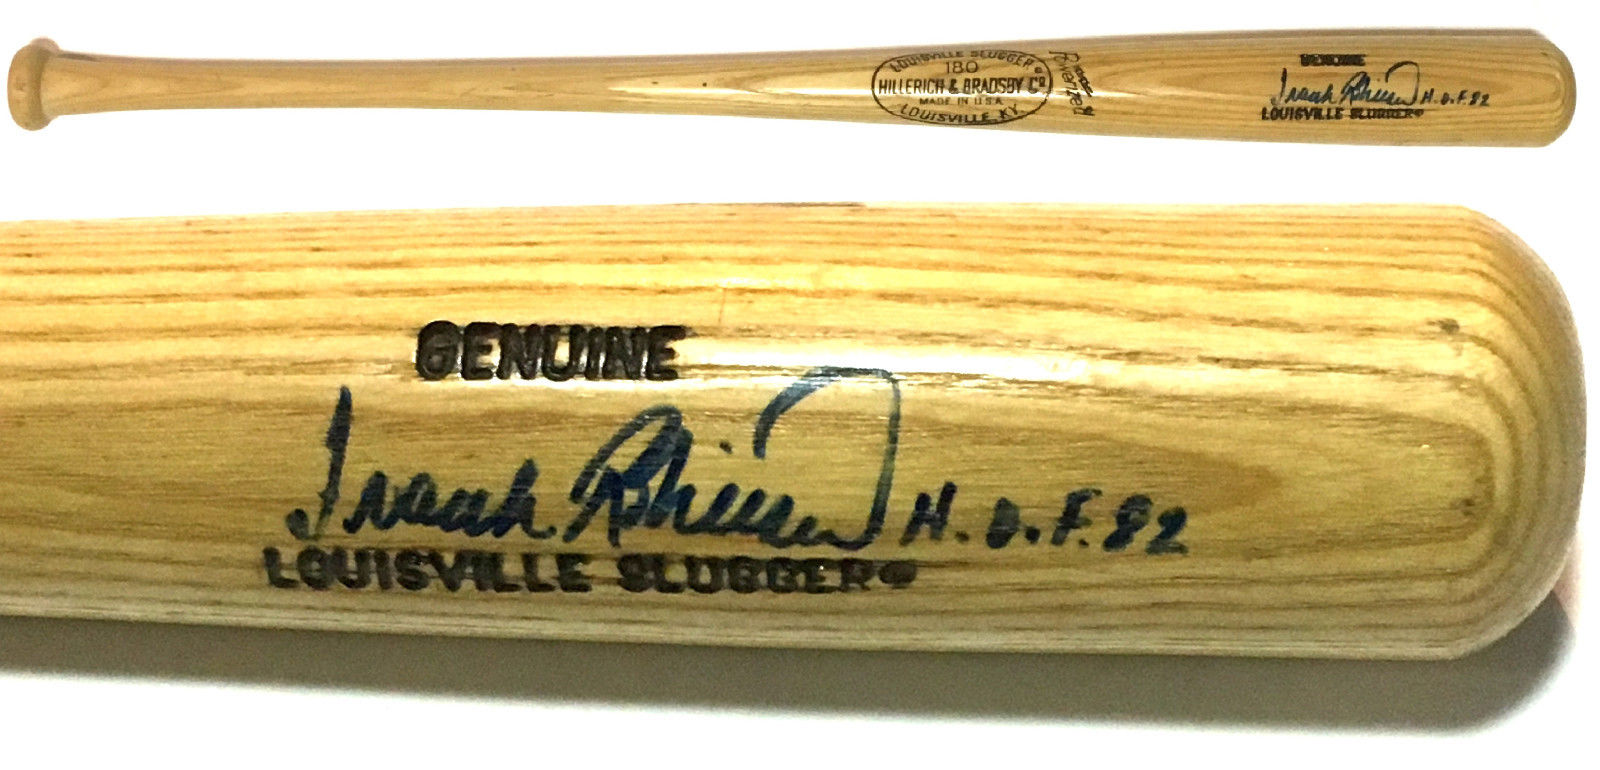 Frank Robinson Orioles Signed LS baseball bat INS HOF 82 Autograph PSA/DNA COA